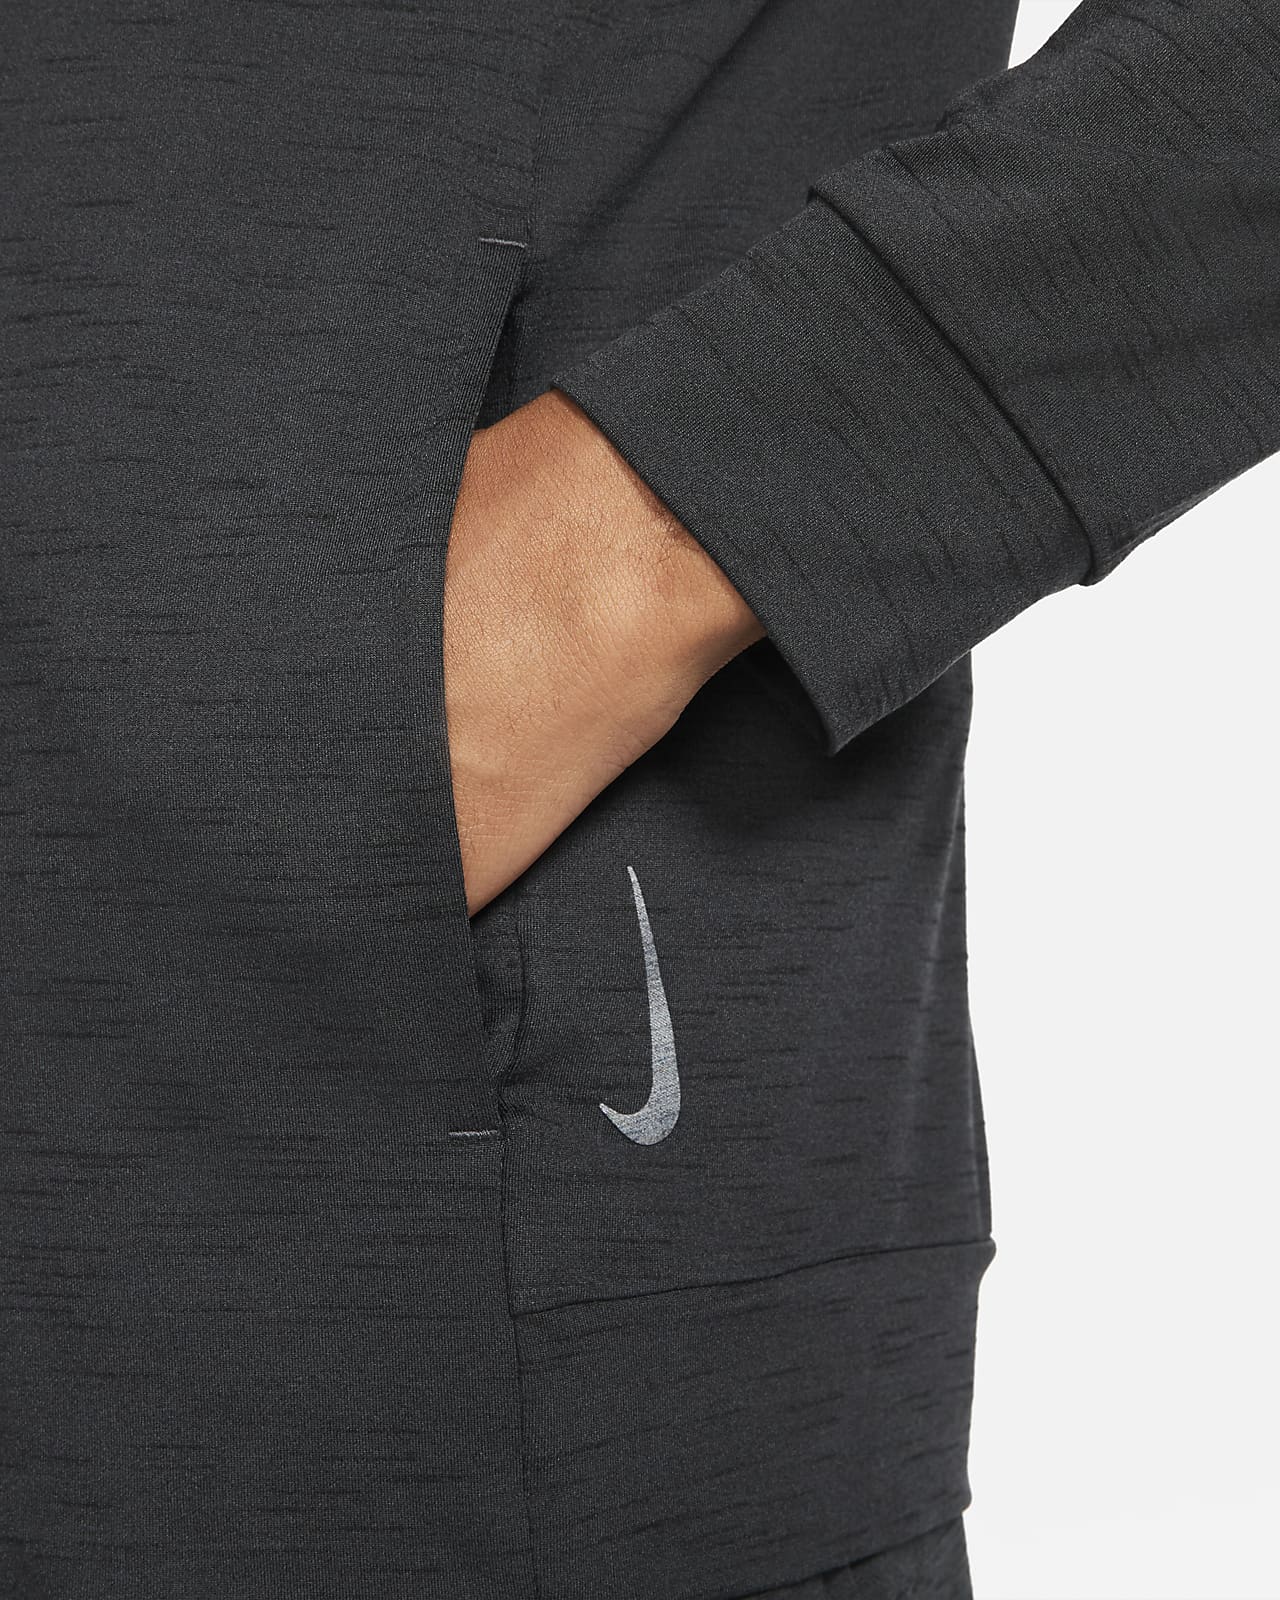 Nike Yoga Men's Jacket. Nike.com